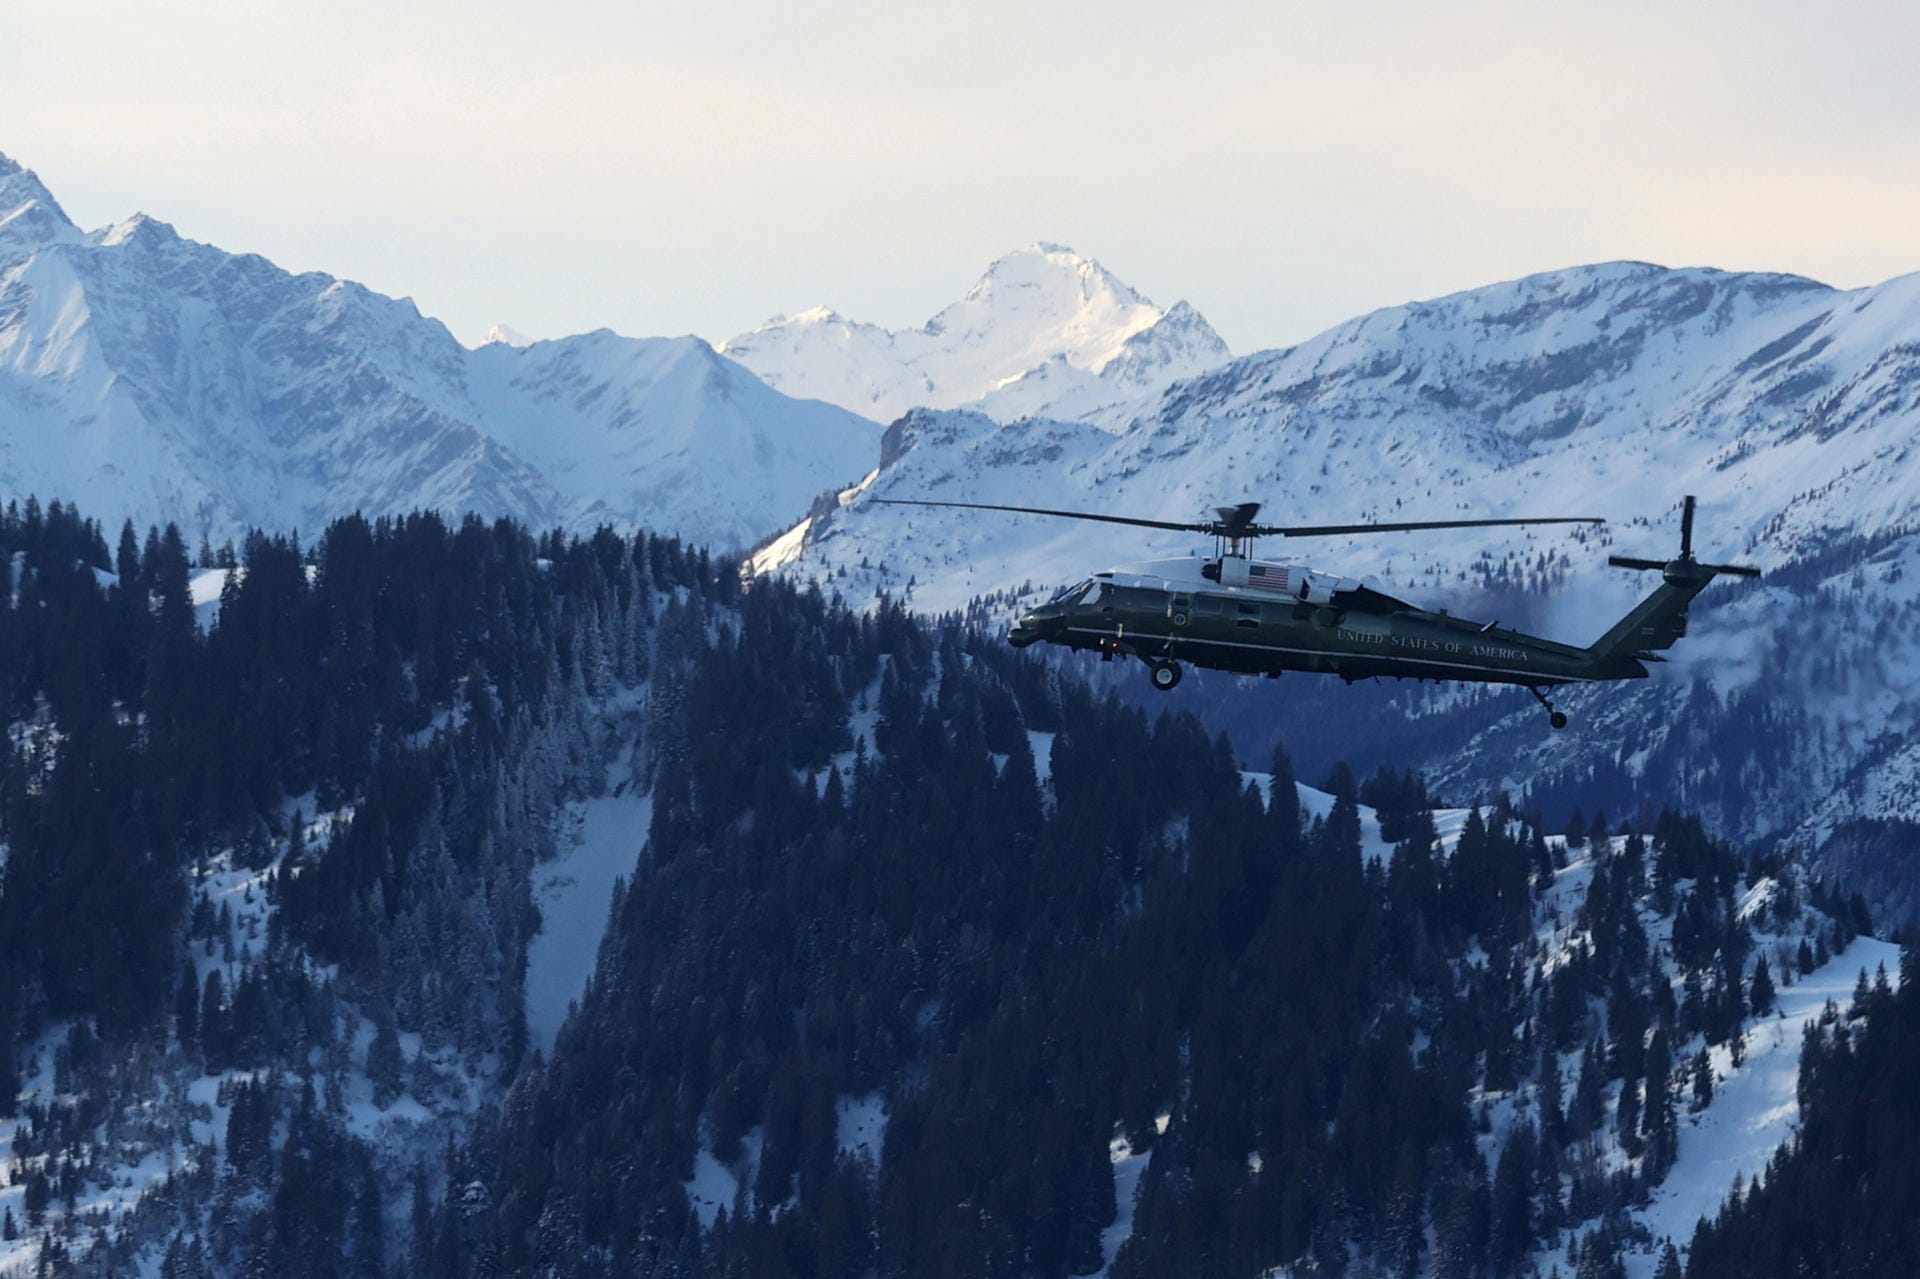 Umgeben von verschneiten Bergen: Marine One mit US-Präsident Trump an Bord setzt zur Landung in Davos an.